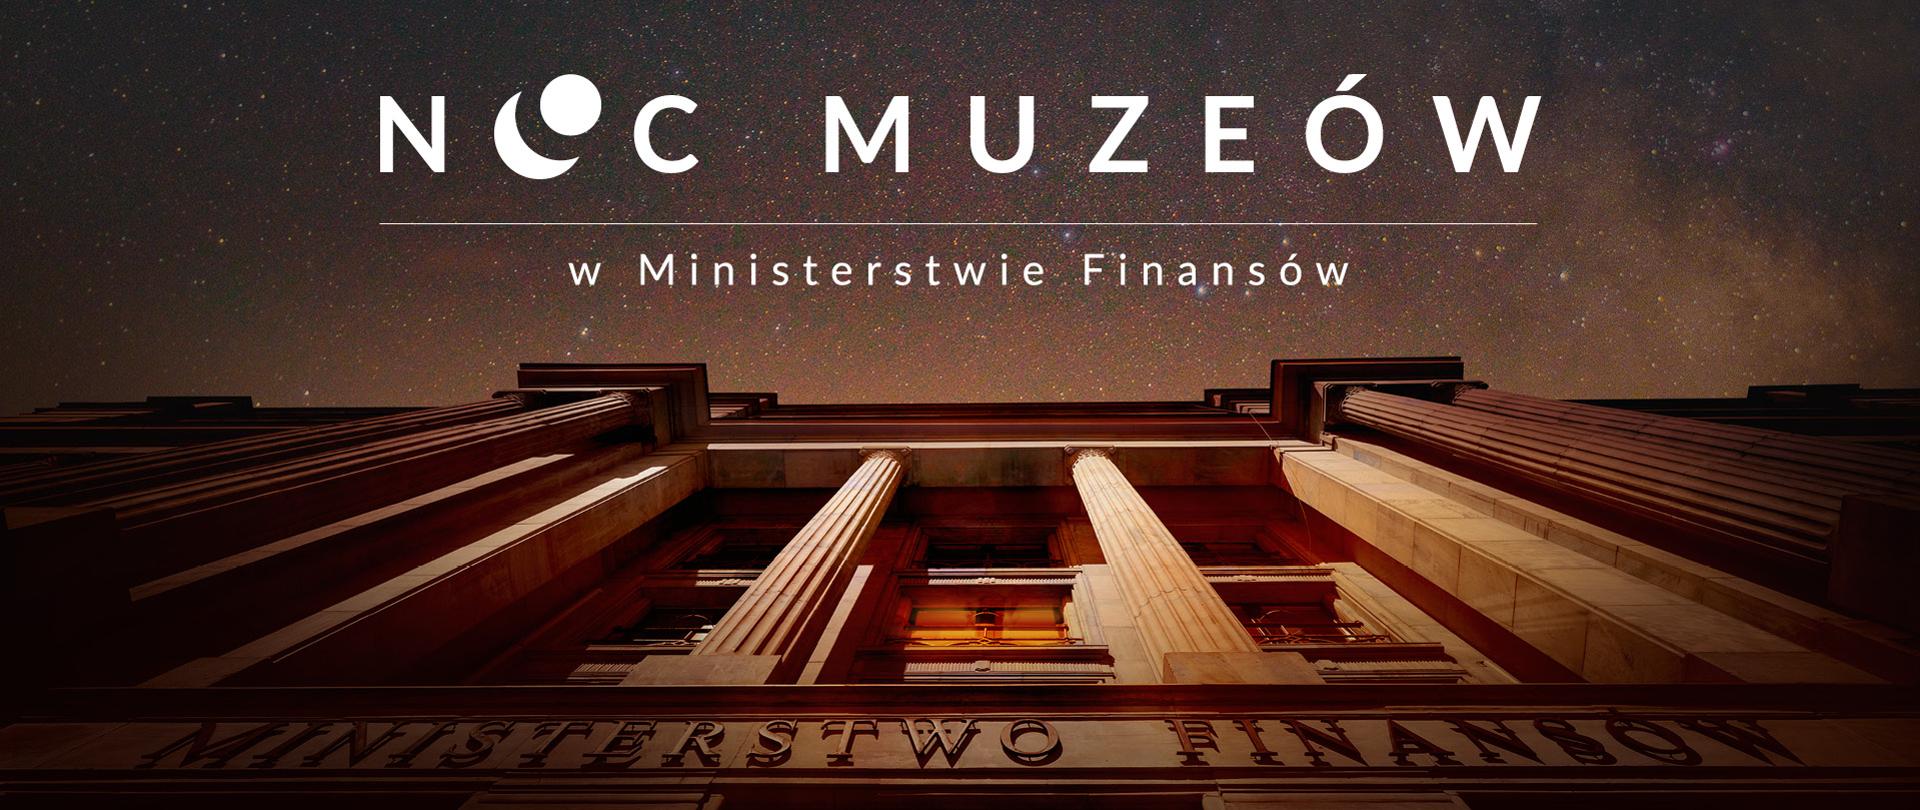 Wejścia główne do Ministerstwa Finansów i napis noc muzeów w Ministerstwie Finansów